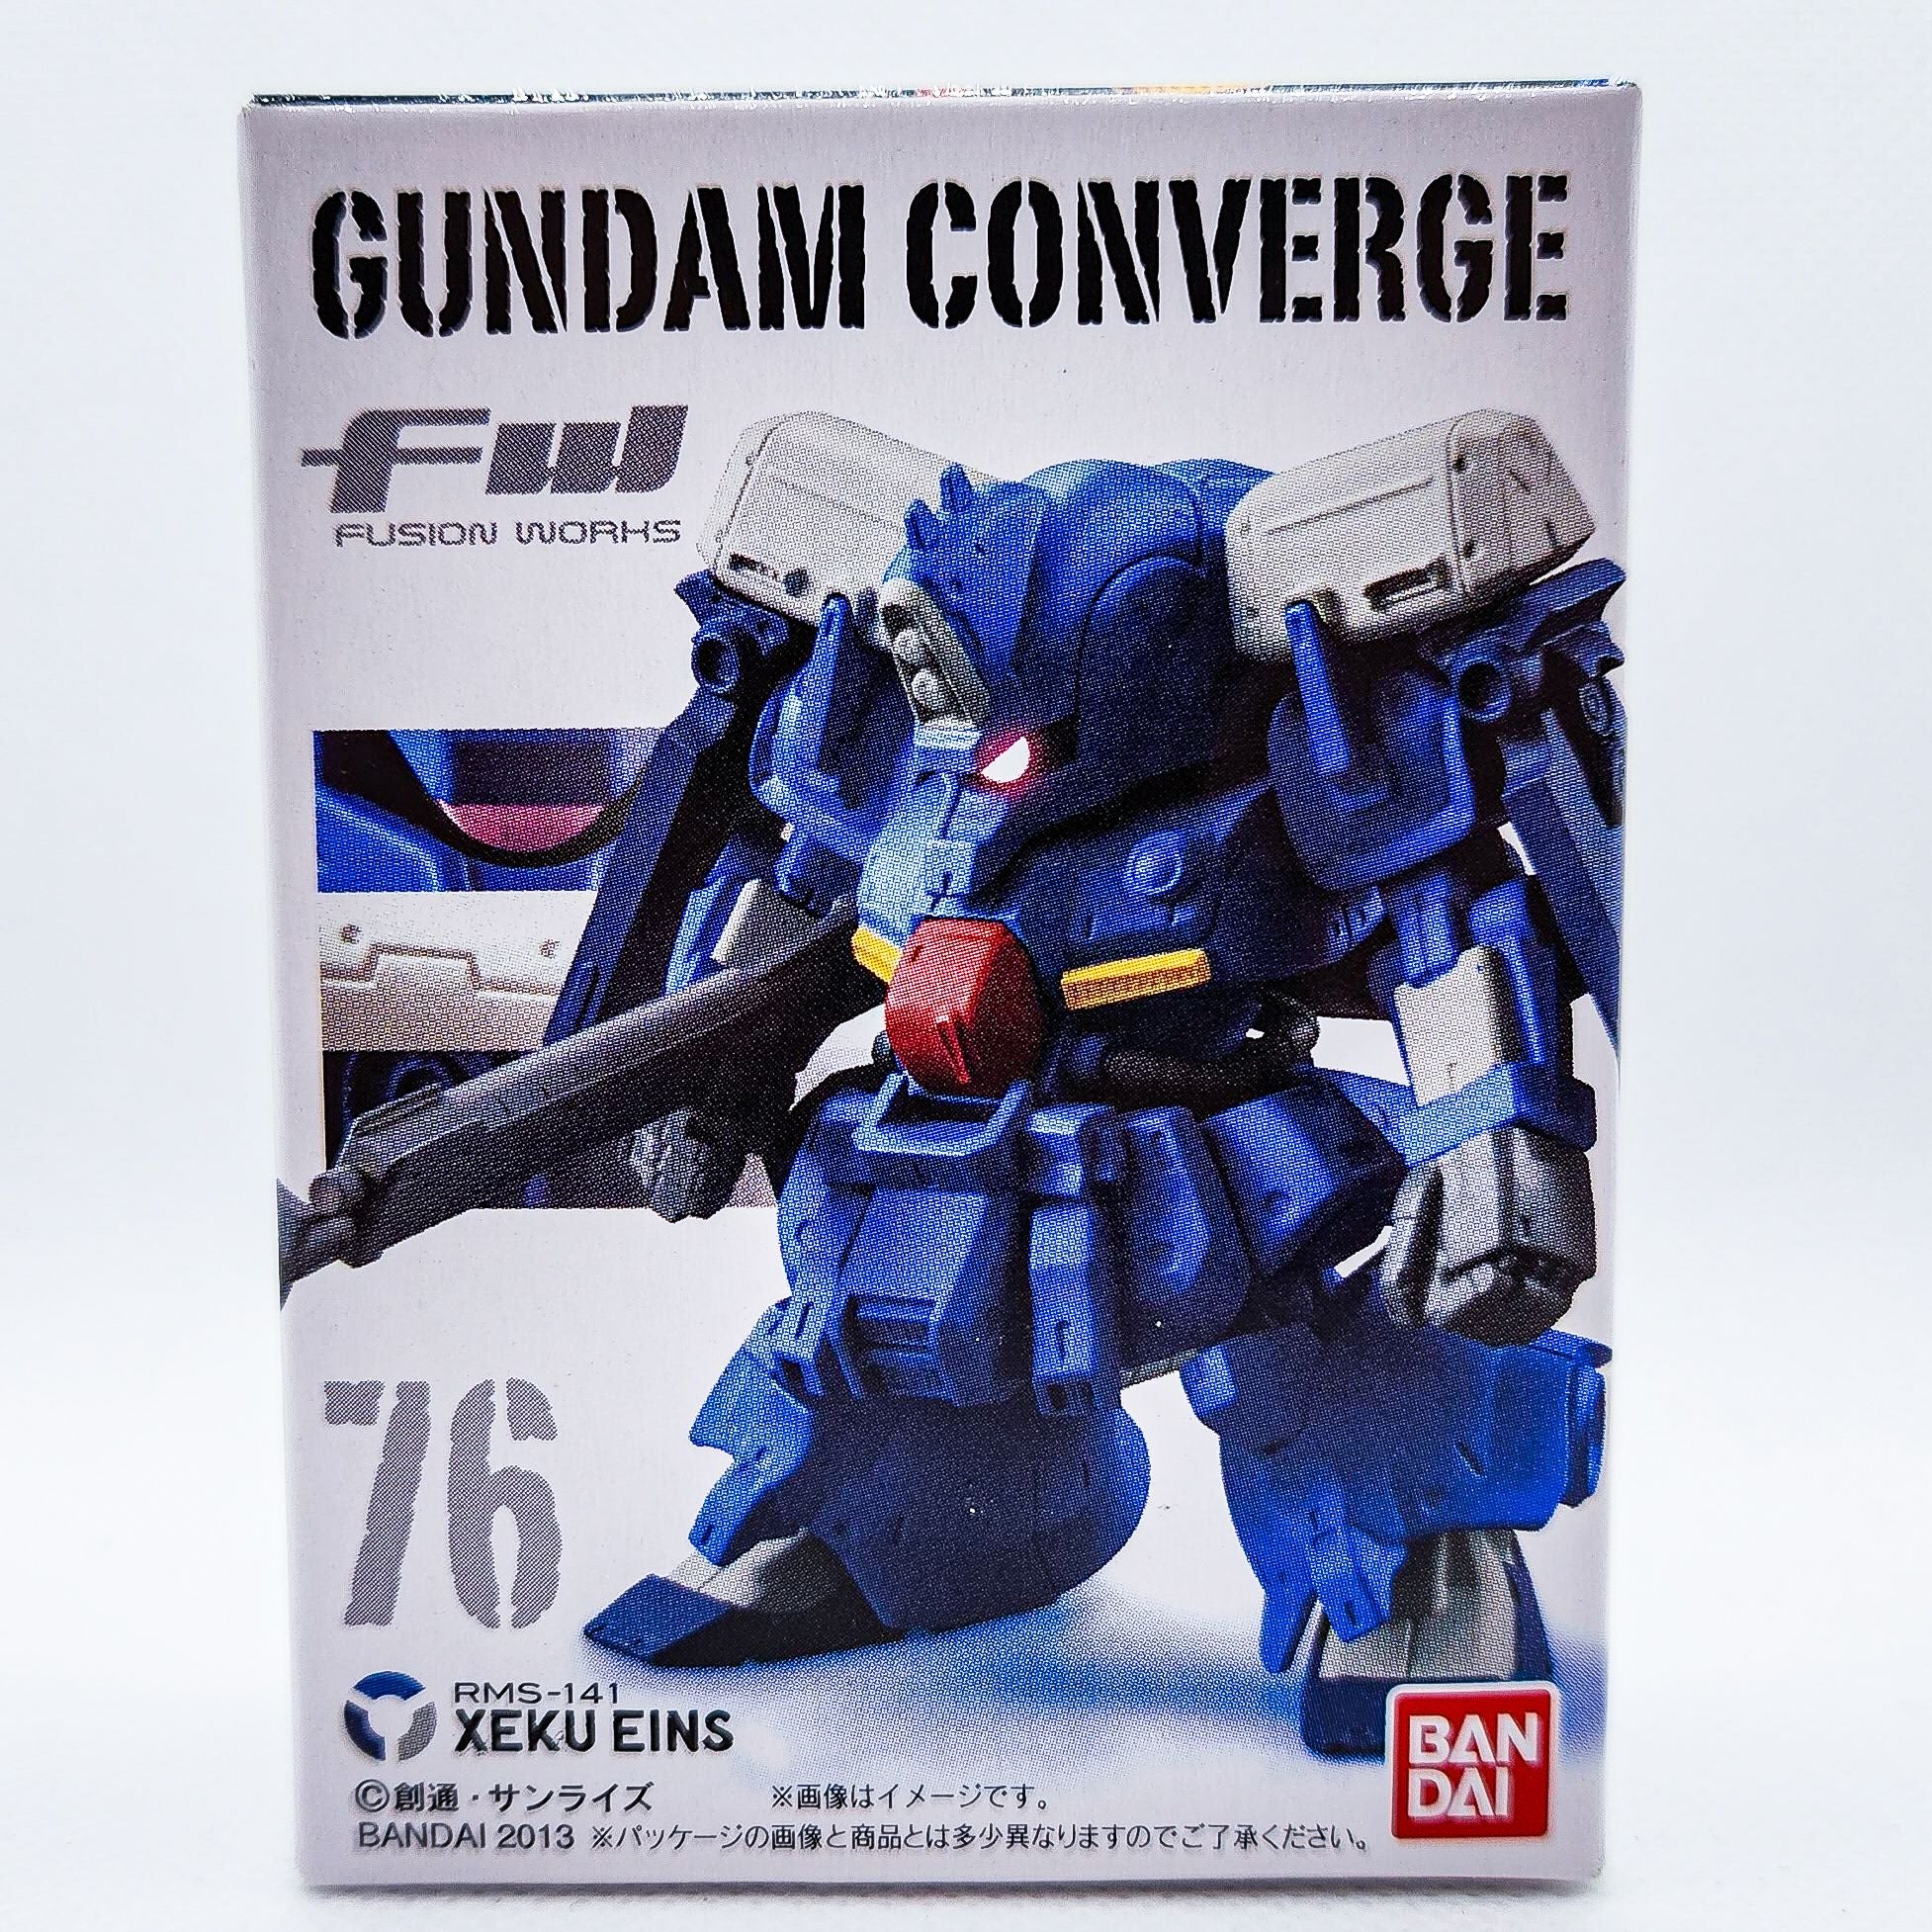 Gundam Converge #76 Xeku Eins by Bandai - 1